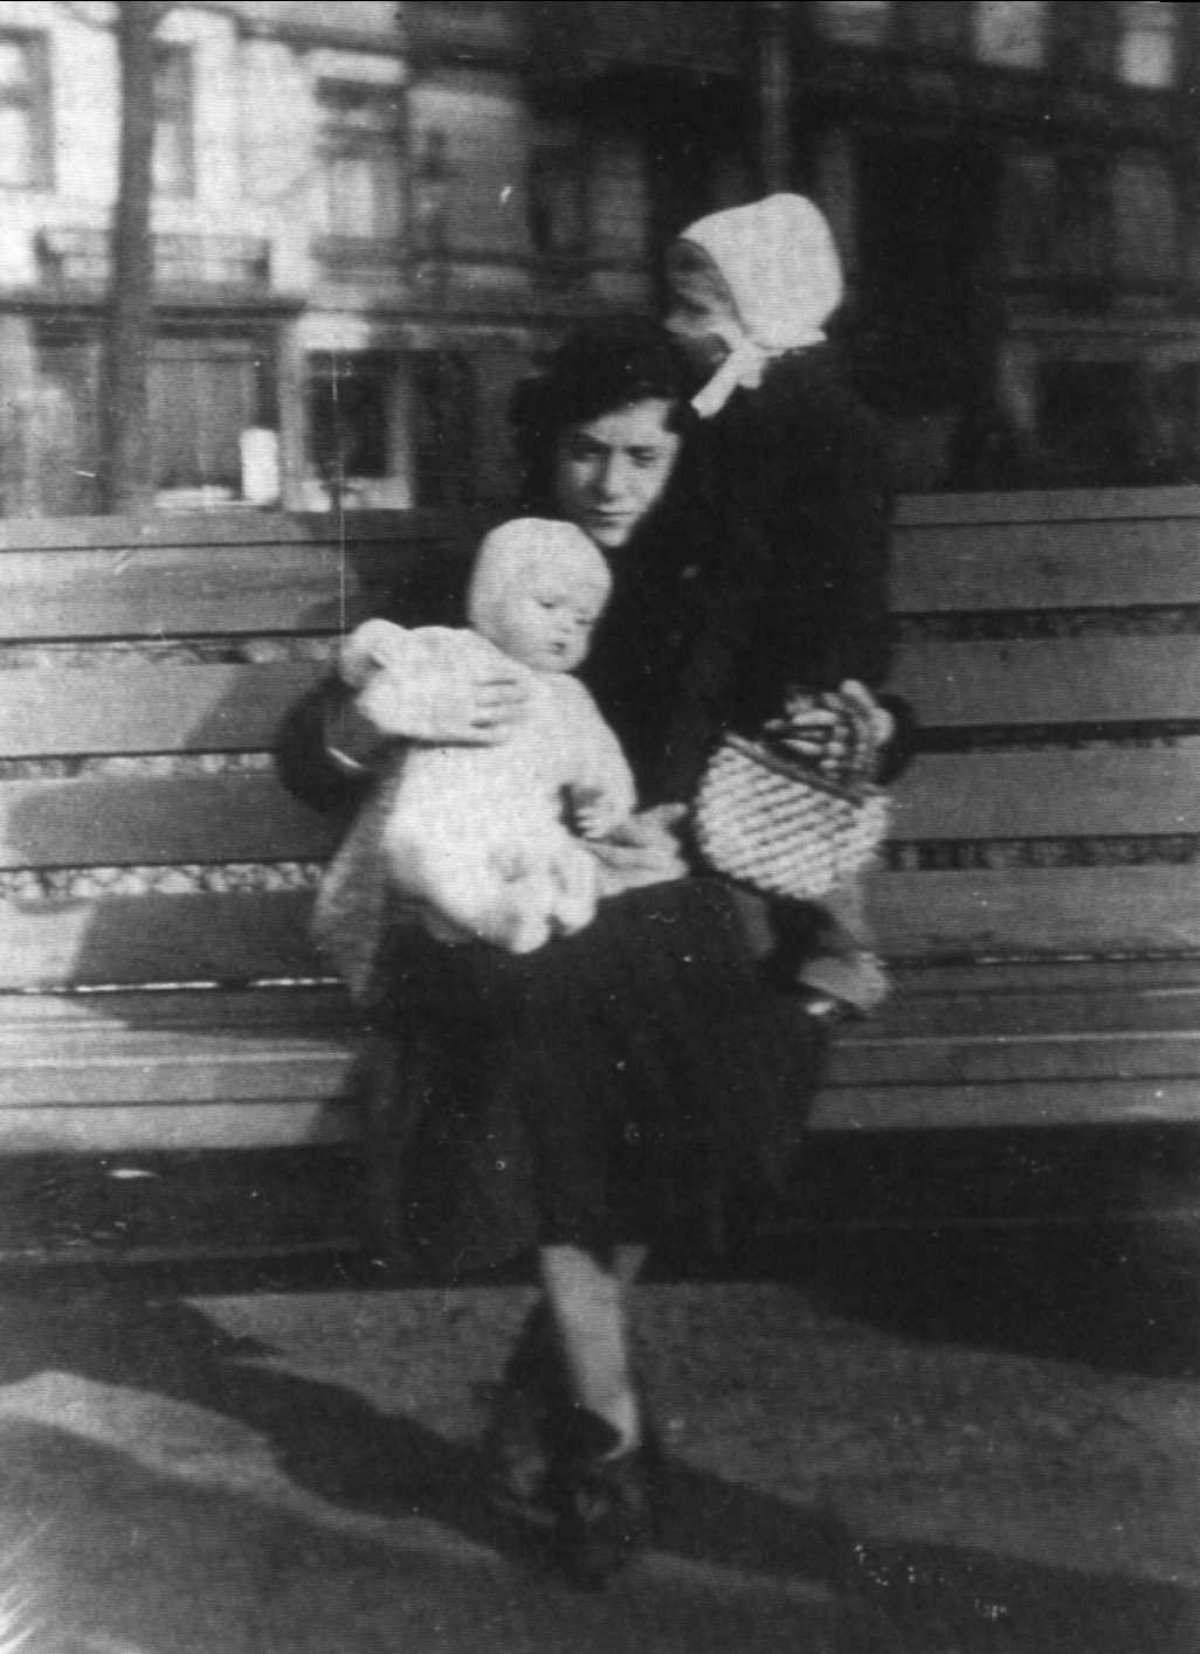 История Августа Ландмессера — человека с фотографии, не поднявшего руку в нацистском приветствии